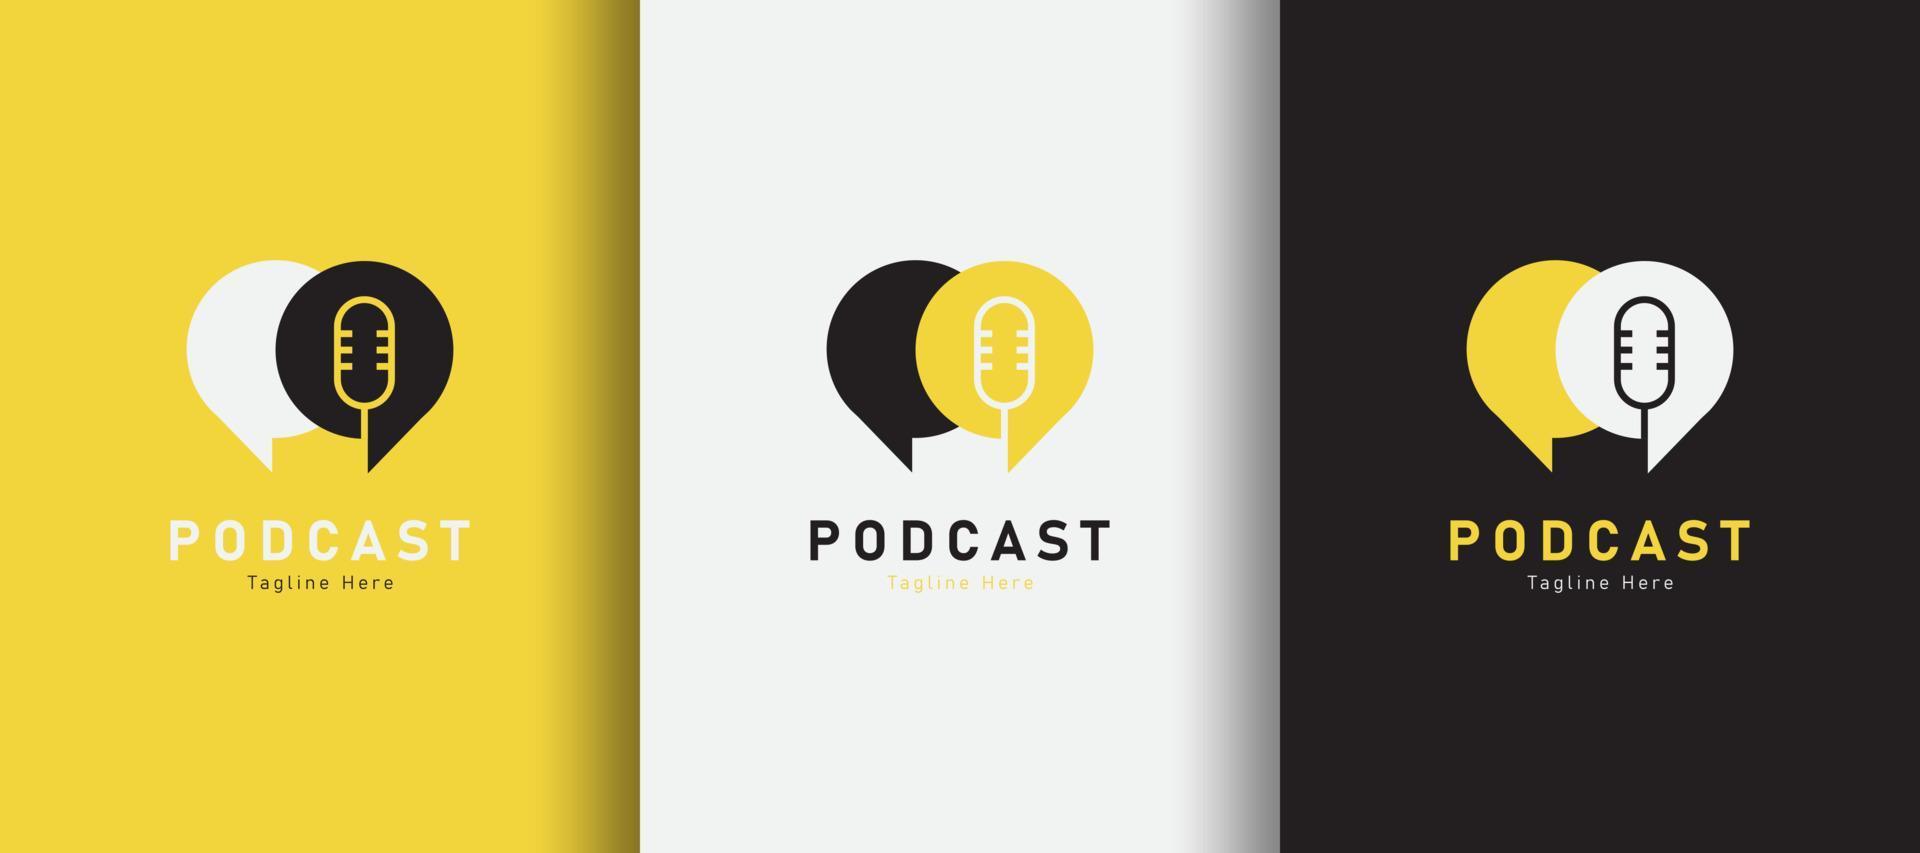 detaljerad chatt prata podcast logotyp på annorlunda färgad bakgrund vektor